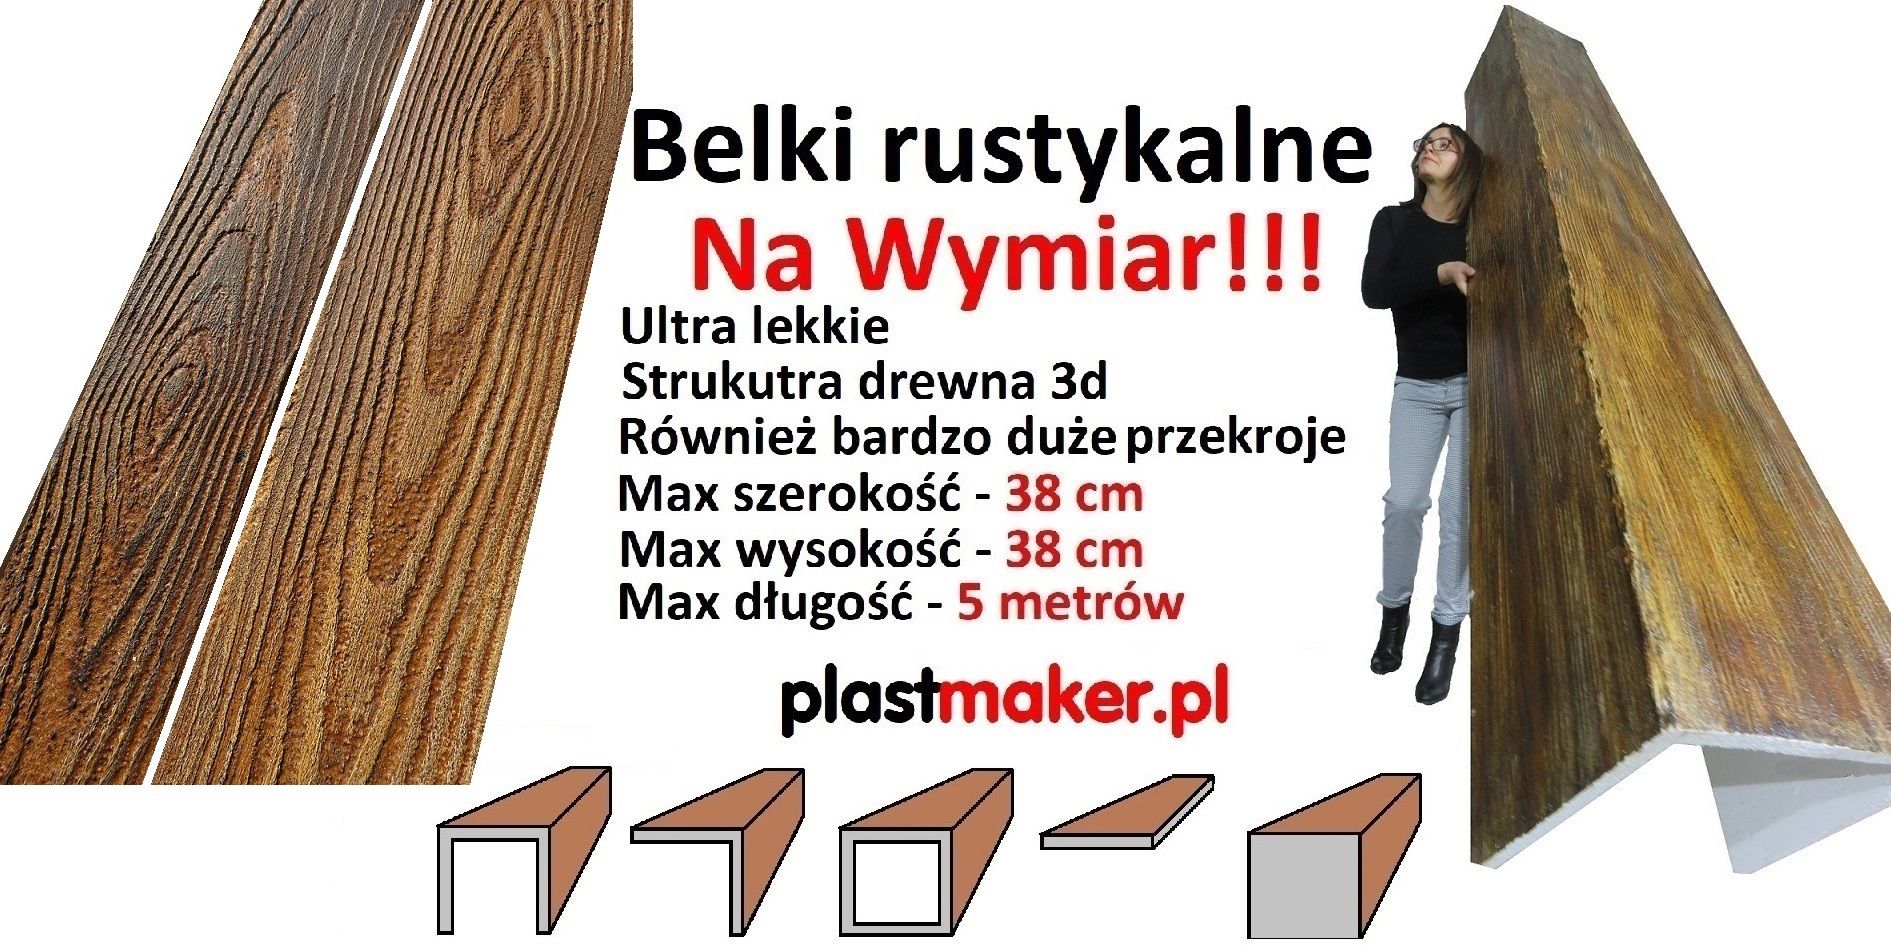 Belki rustykalne Na Wymiar PLASTMAKER- Belki na suficie Kalisz - Zdjęcie 1